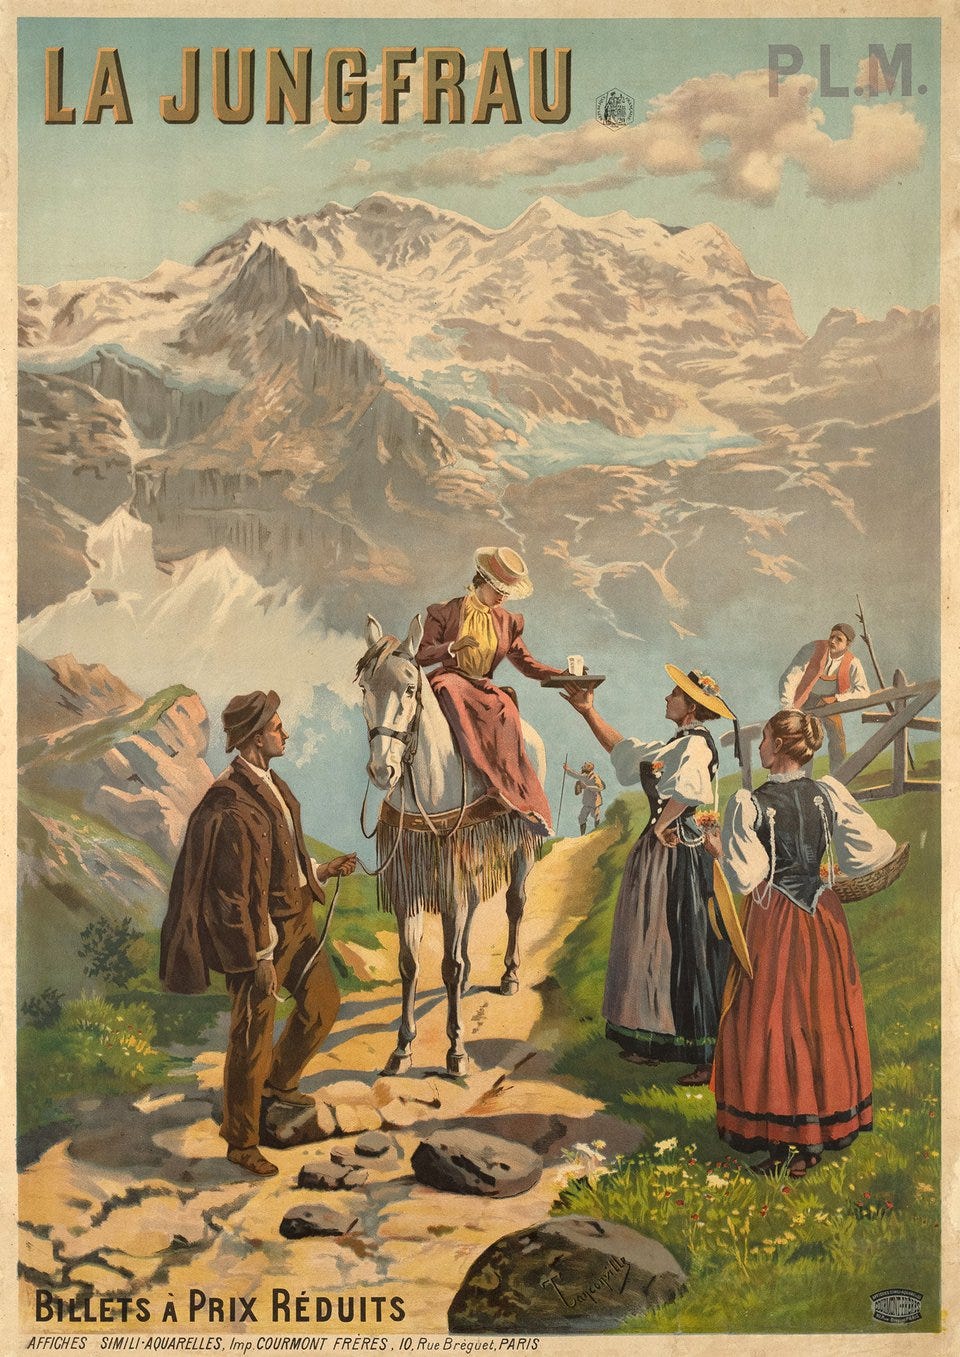 Vintage poster – La Jungfrau, P.L.M.Billets à prix réduits – Galerie 1 2 3